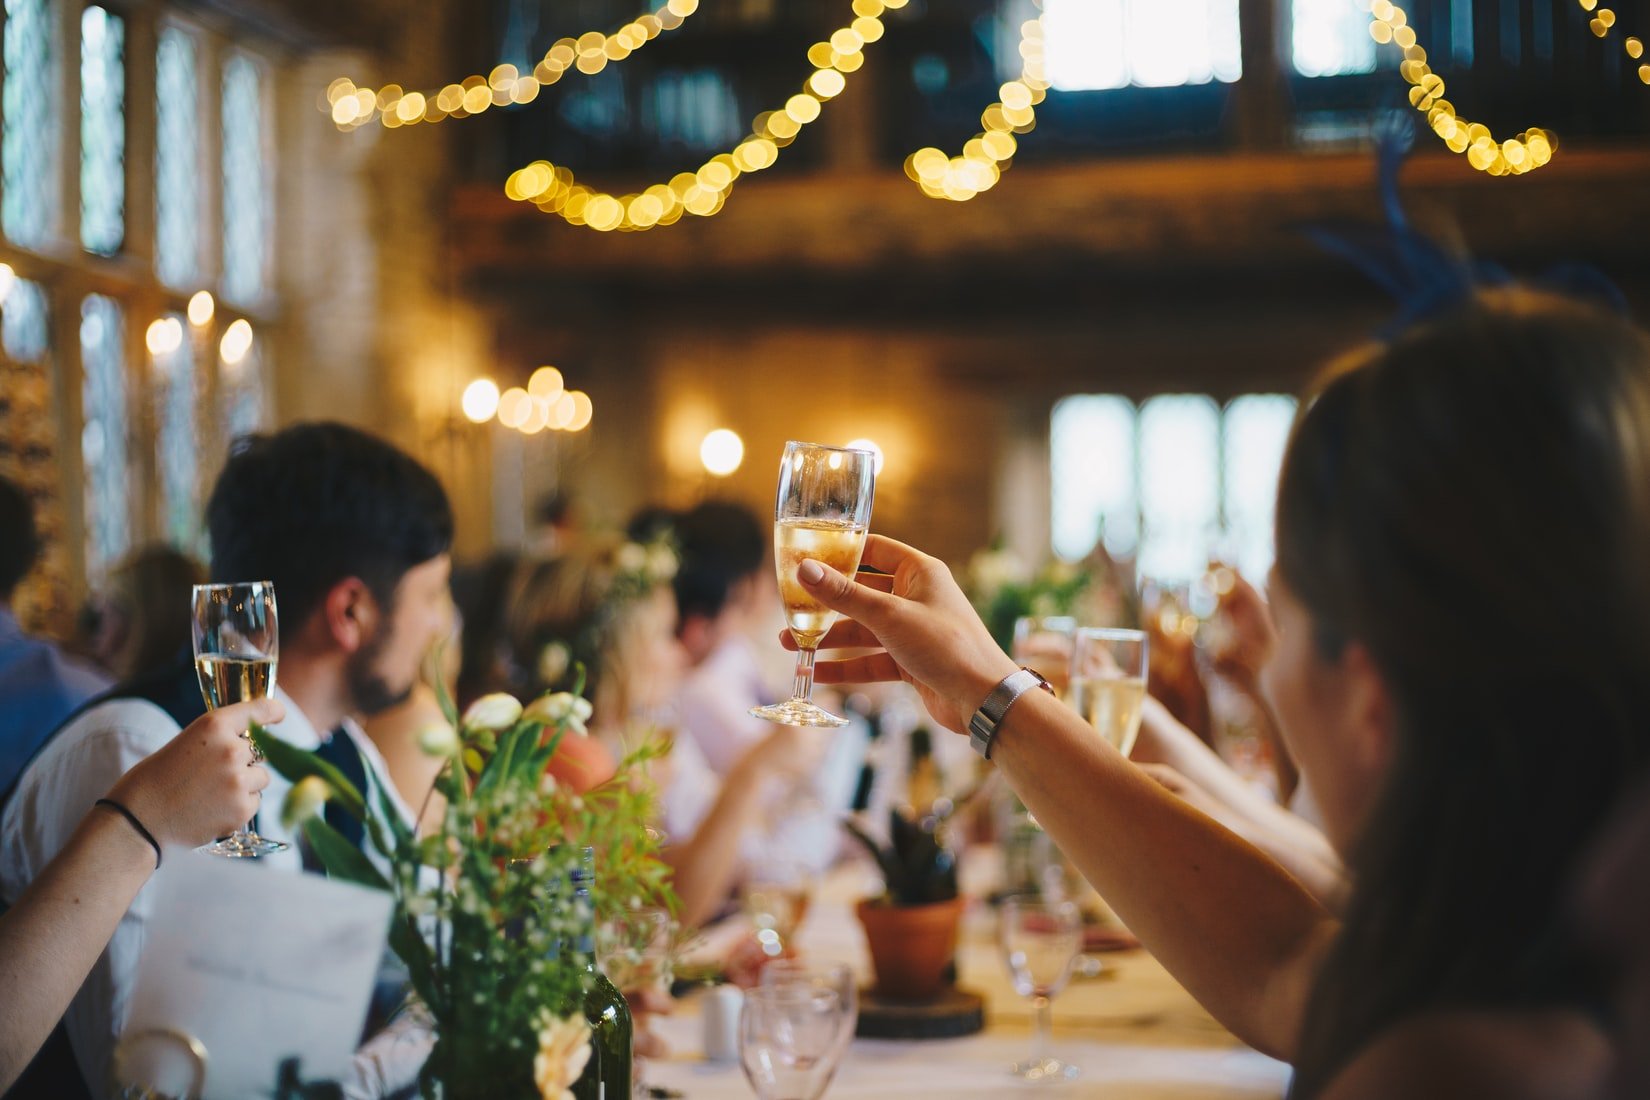 The Chapel Bar - Wedding Venue